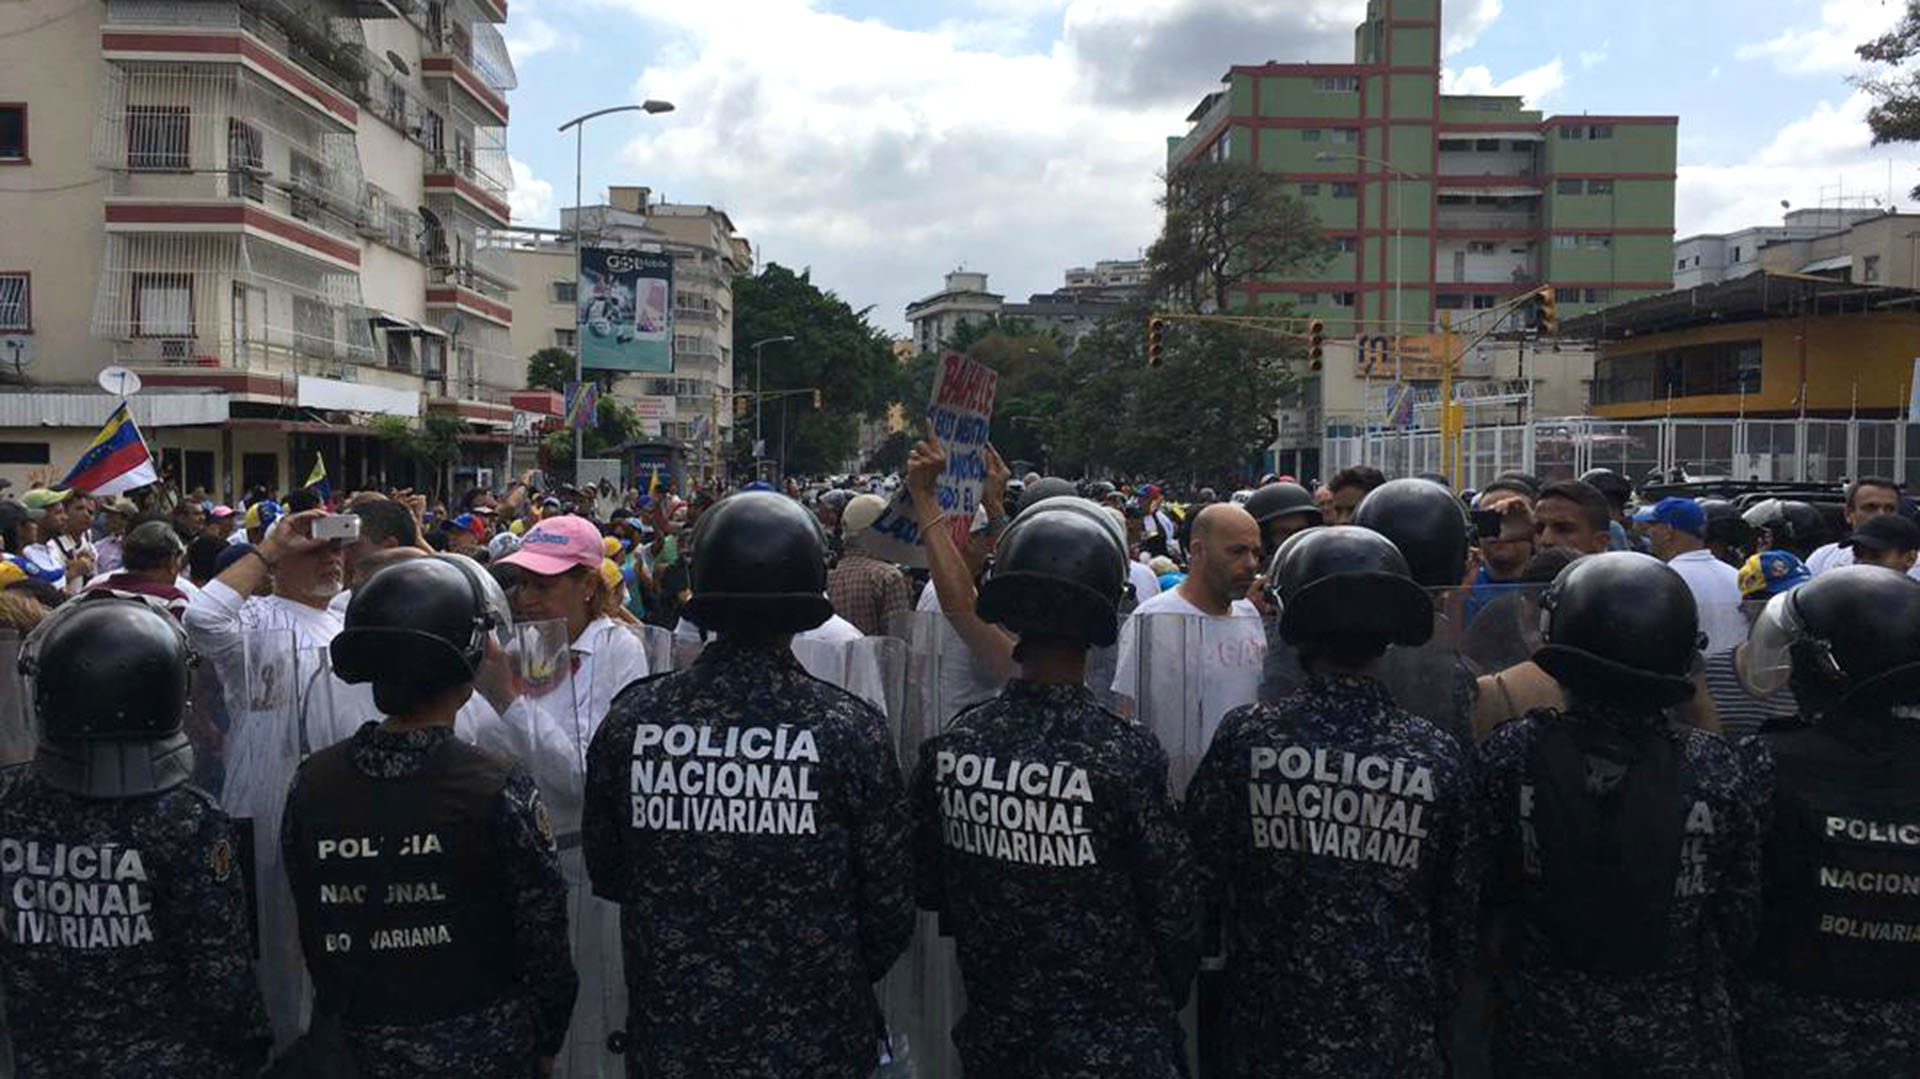 El organismo que más muertes produjo fue la Polícia Nacional Bolivariana (Archivo/@ElPitazoTV)